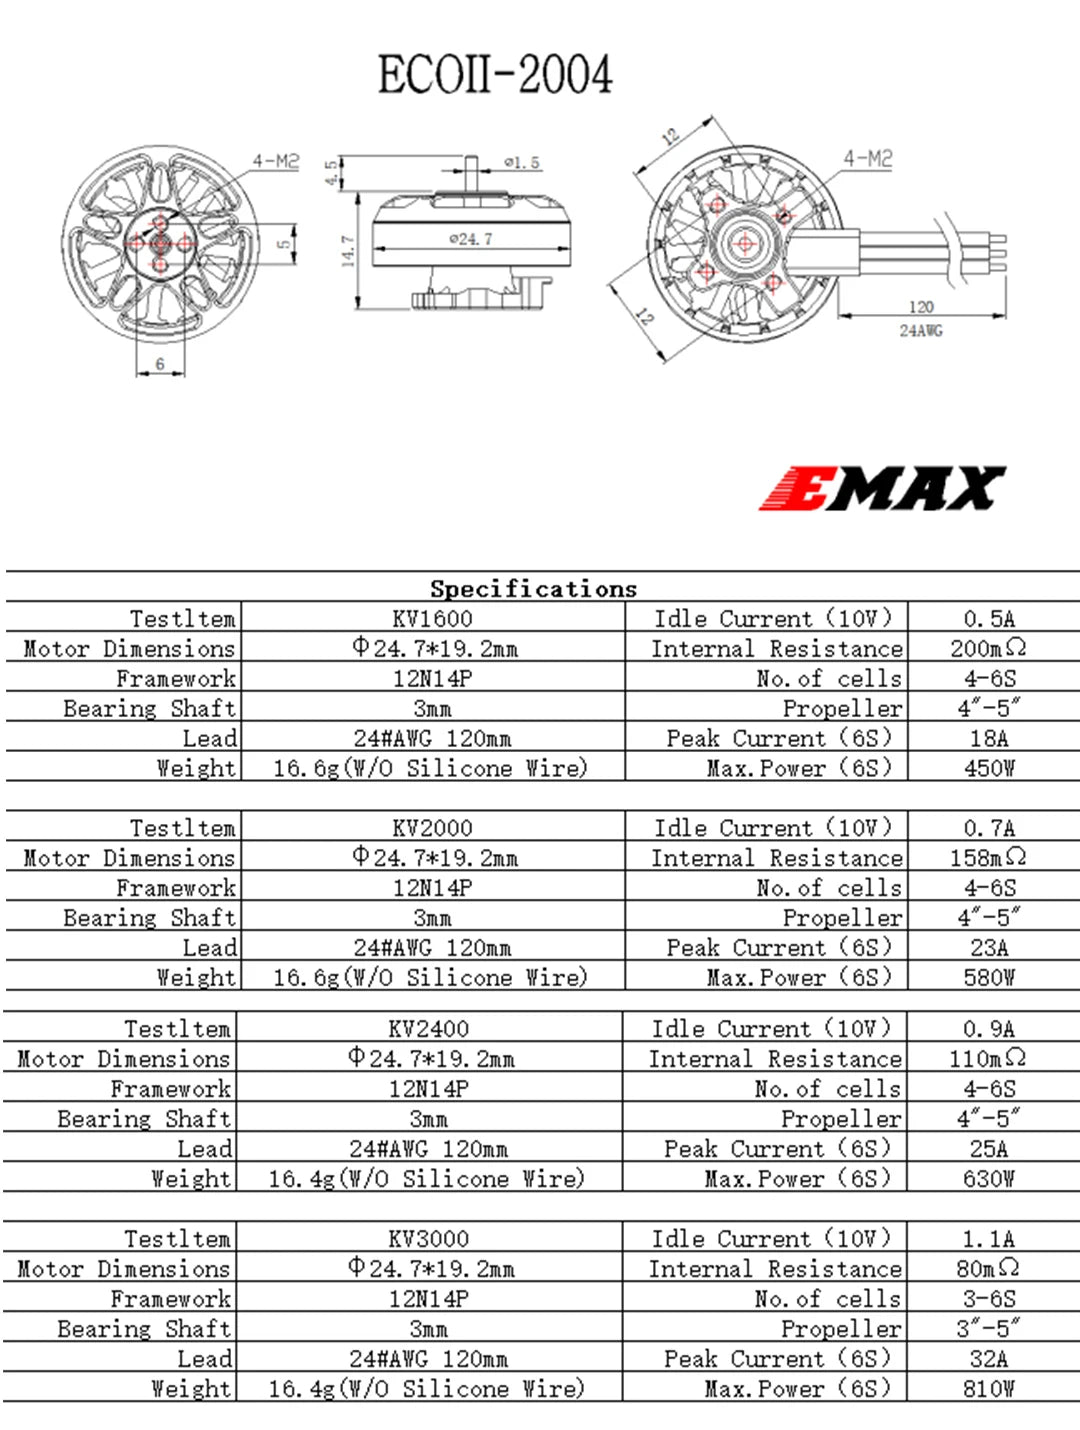 Emax ECO II Series 2004 Motor, 0.54 Hotor Dinensions 24 7*19 Znn Internal Resistance 200n